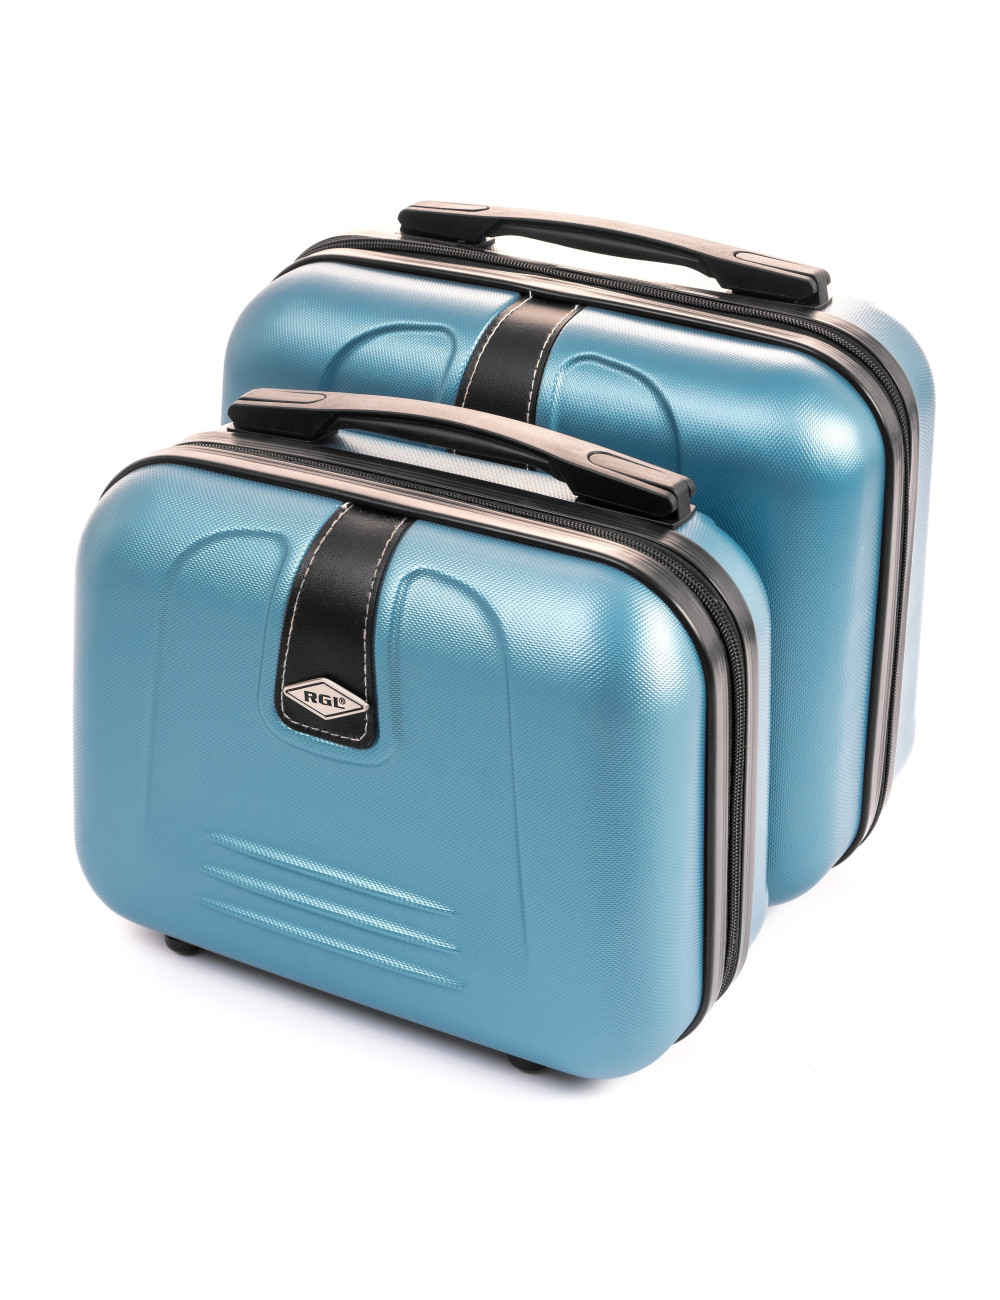 Zestaw kuferków 910 (L + XL) - niebieski metaliczny